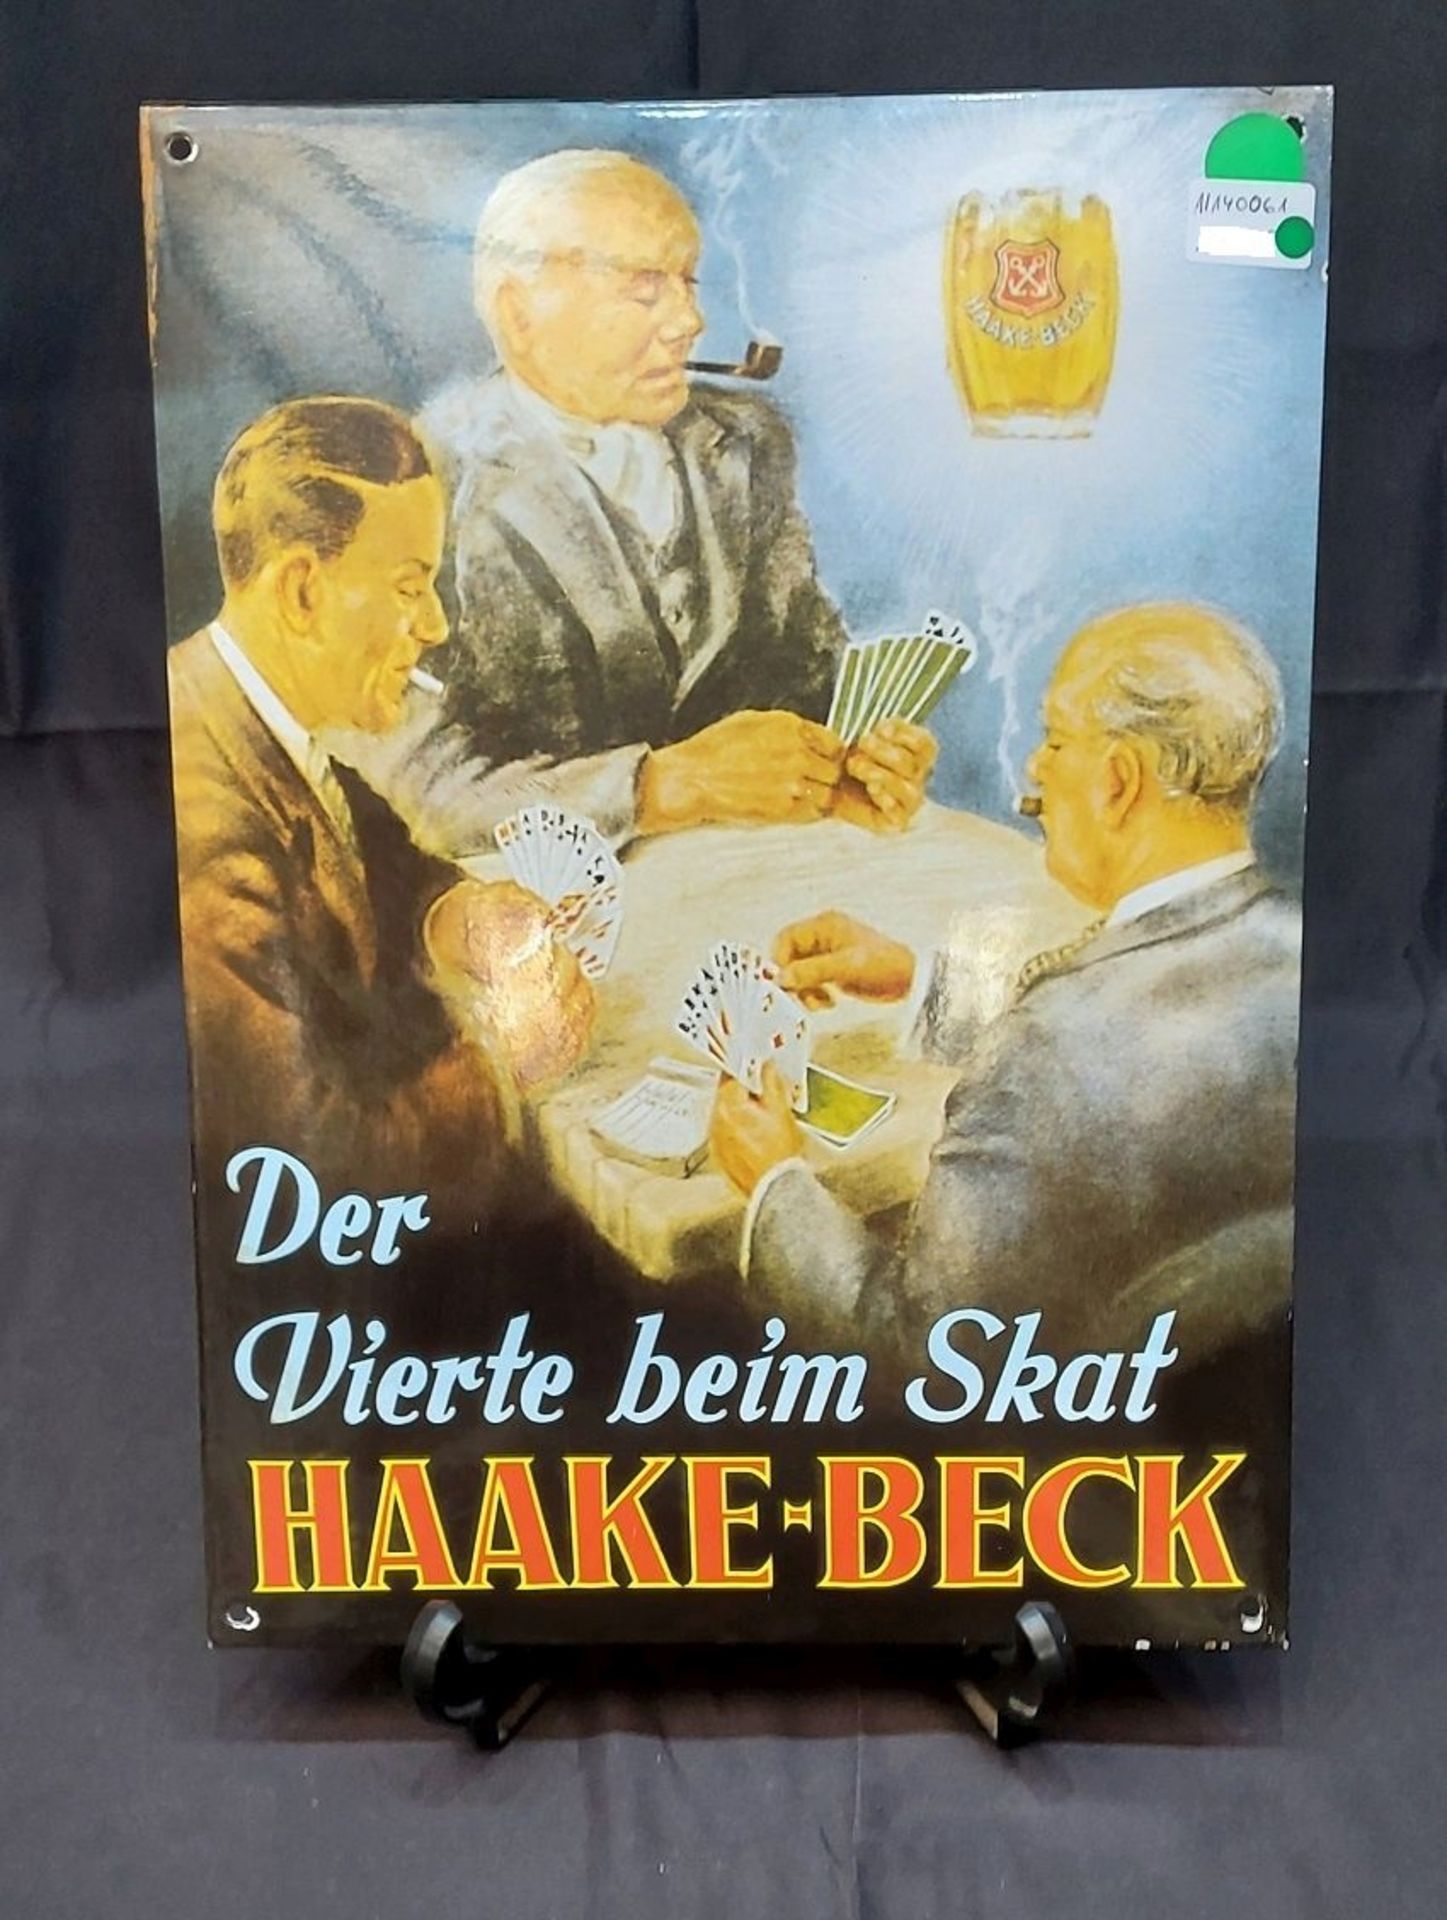 Sammlerstück! Der Vierte beim Skat - Seltenes Haake Beck Schild, lim. Auflage 1997